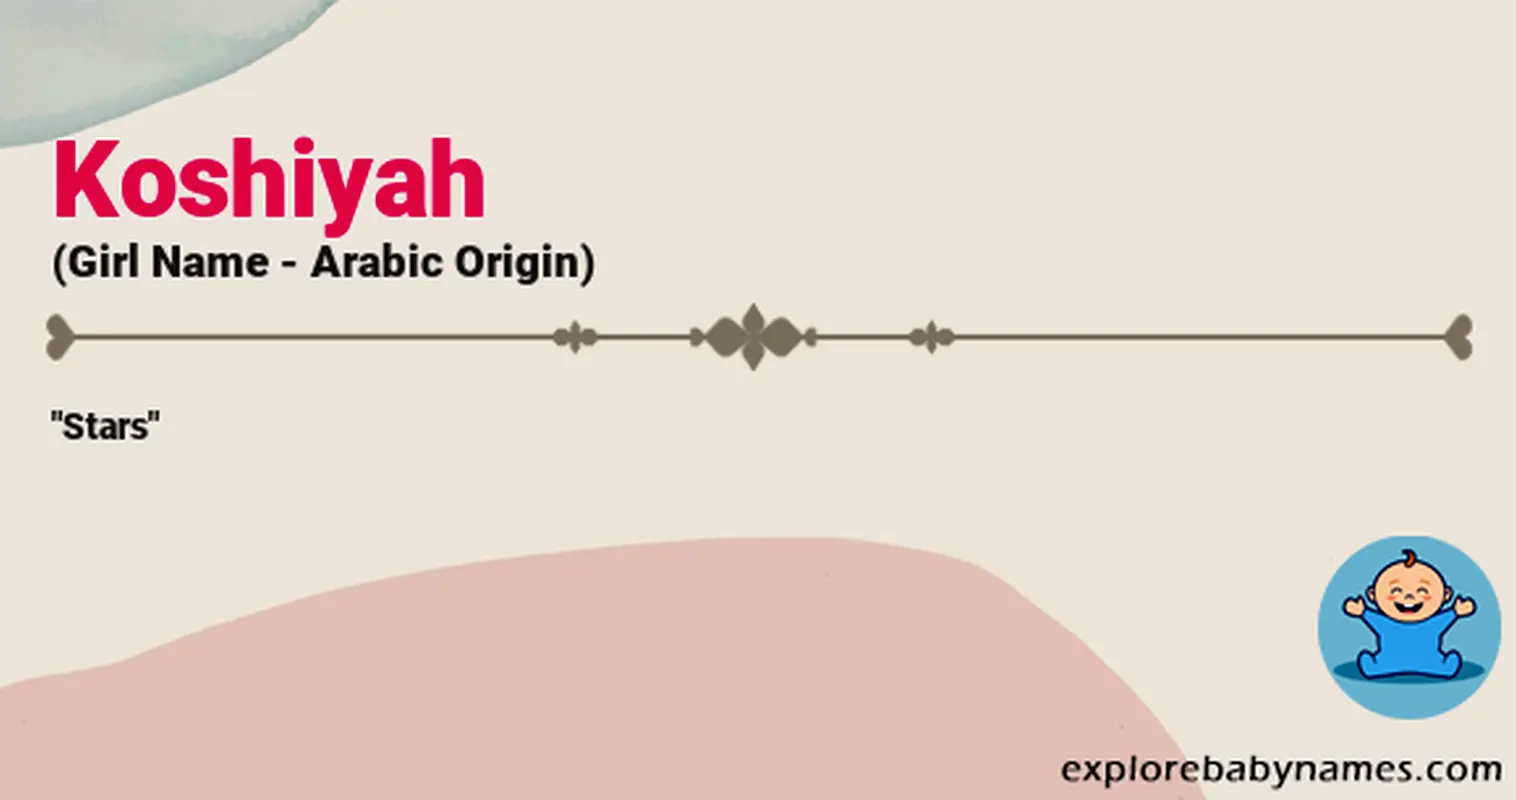 Meaning of Koshiyah